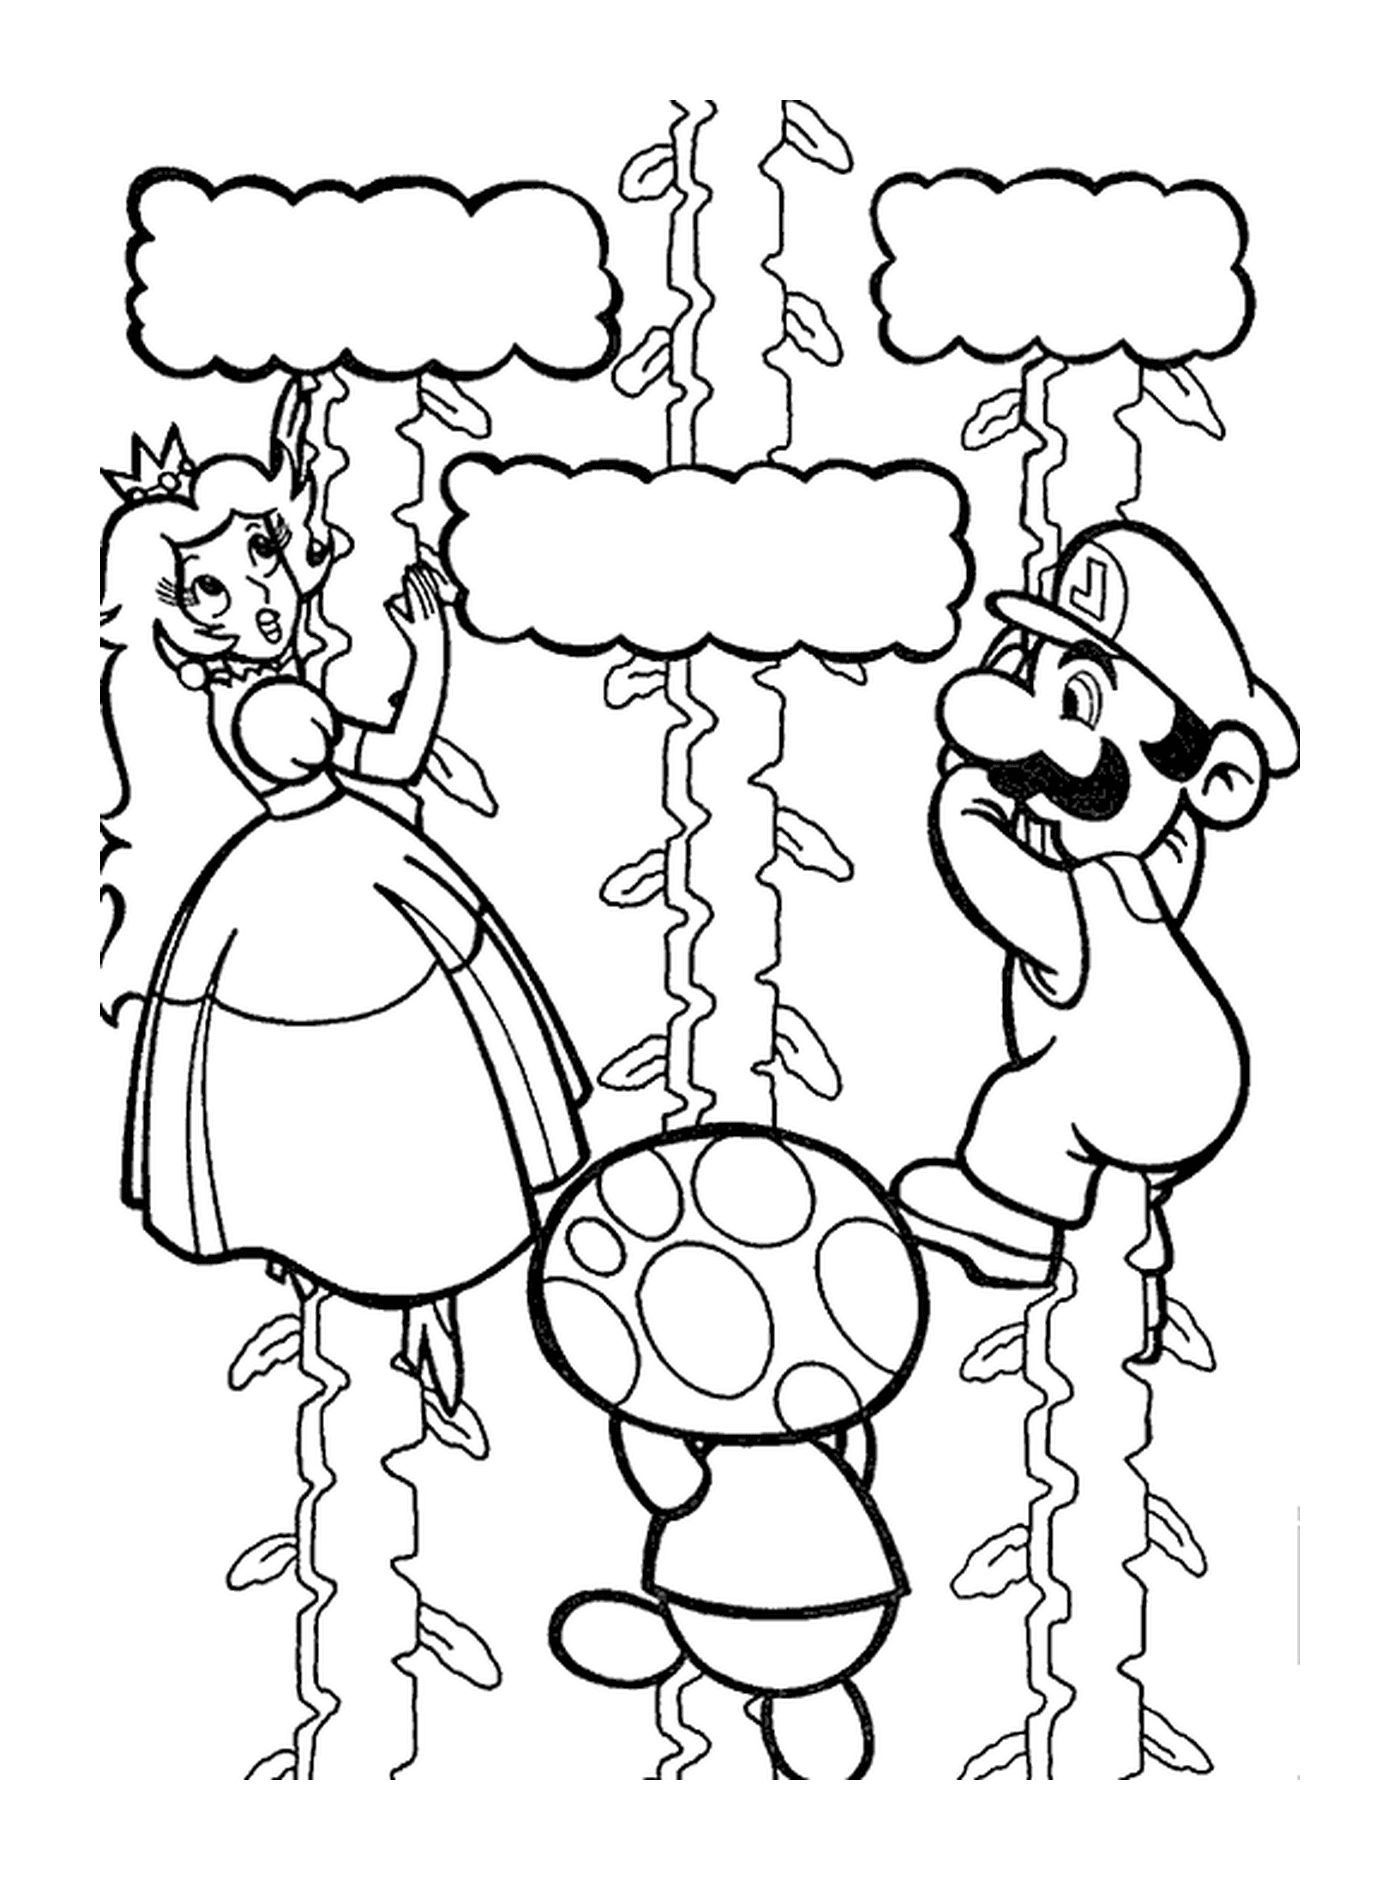  Mario, Peach and Toad climb towards the sky 